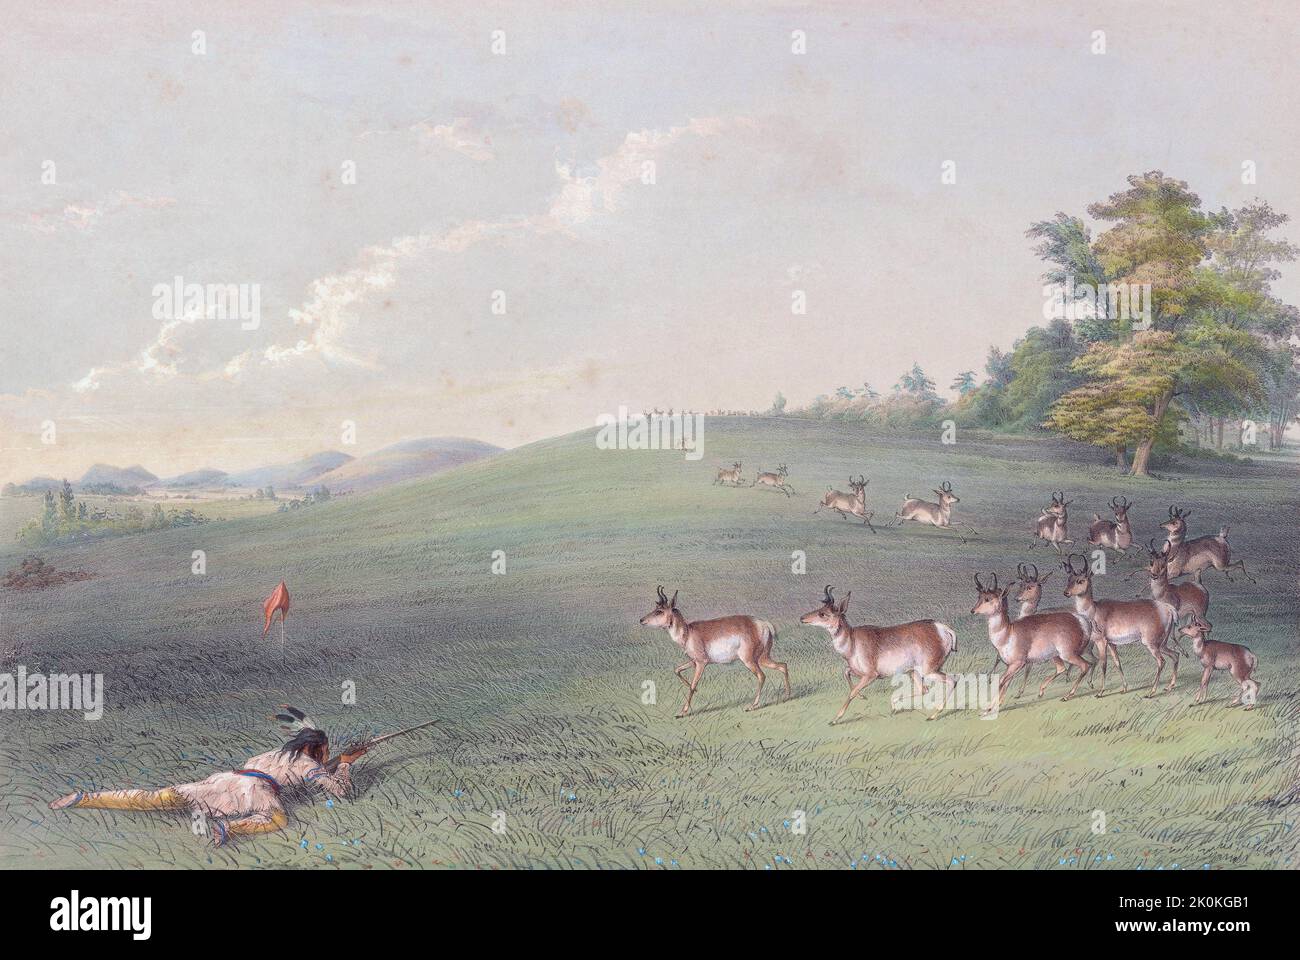 Riprese in Antelope. Un indiano che giace incline sull'erba spara il suo fucile contro un'antilope. Le antilopi sono curiose e l'indiano ha appeso una striscia di stoffa rossa su un bastone per tentare la loro curiosità. Dal North American Indian Portfolio di Catlin, pubblicato a Londra nel 1844 dall'artista, avventuriero americano George Catlin, 1796 - 1872. Durante molti viaggi Catlin registrò con penna e pennello i costumi e gli stili di vita delle tribù dei nativi americani. Foto Stock